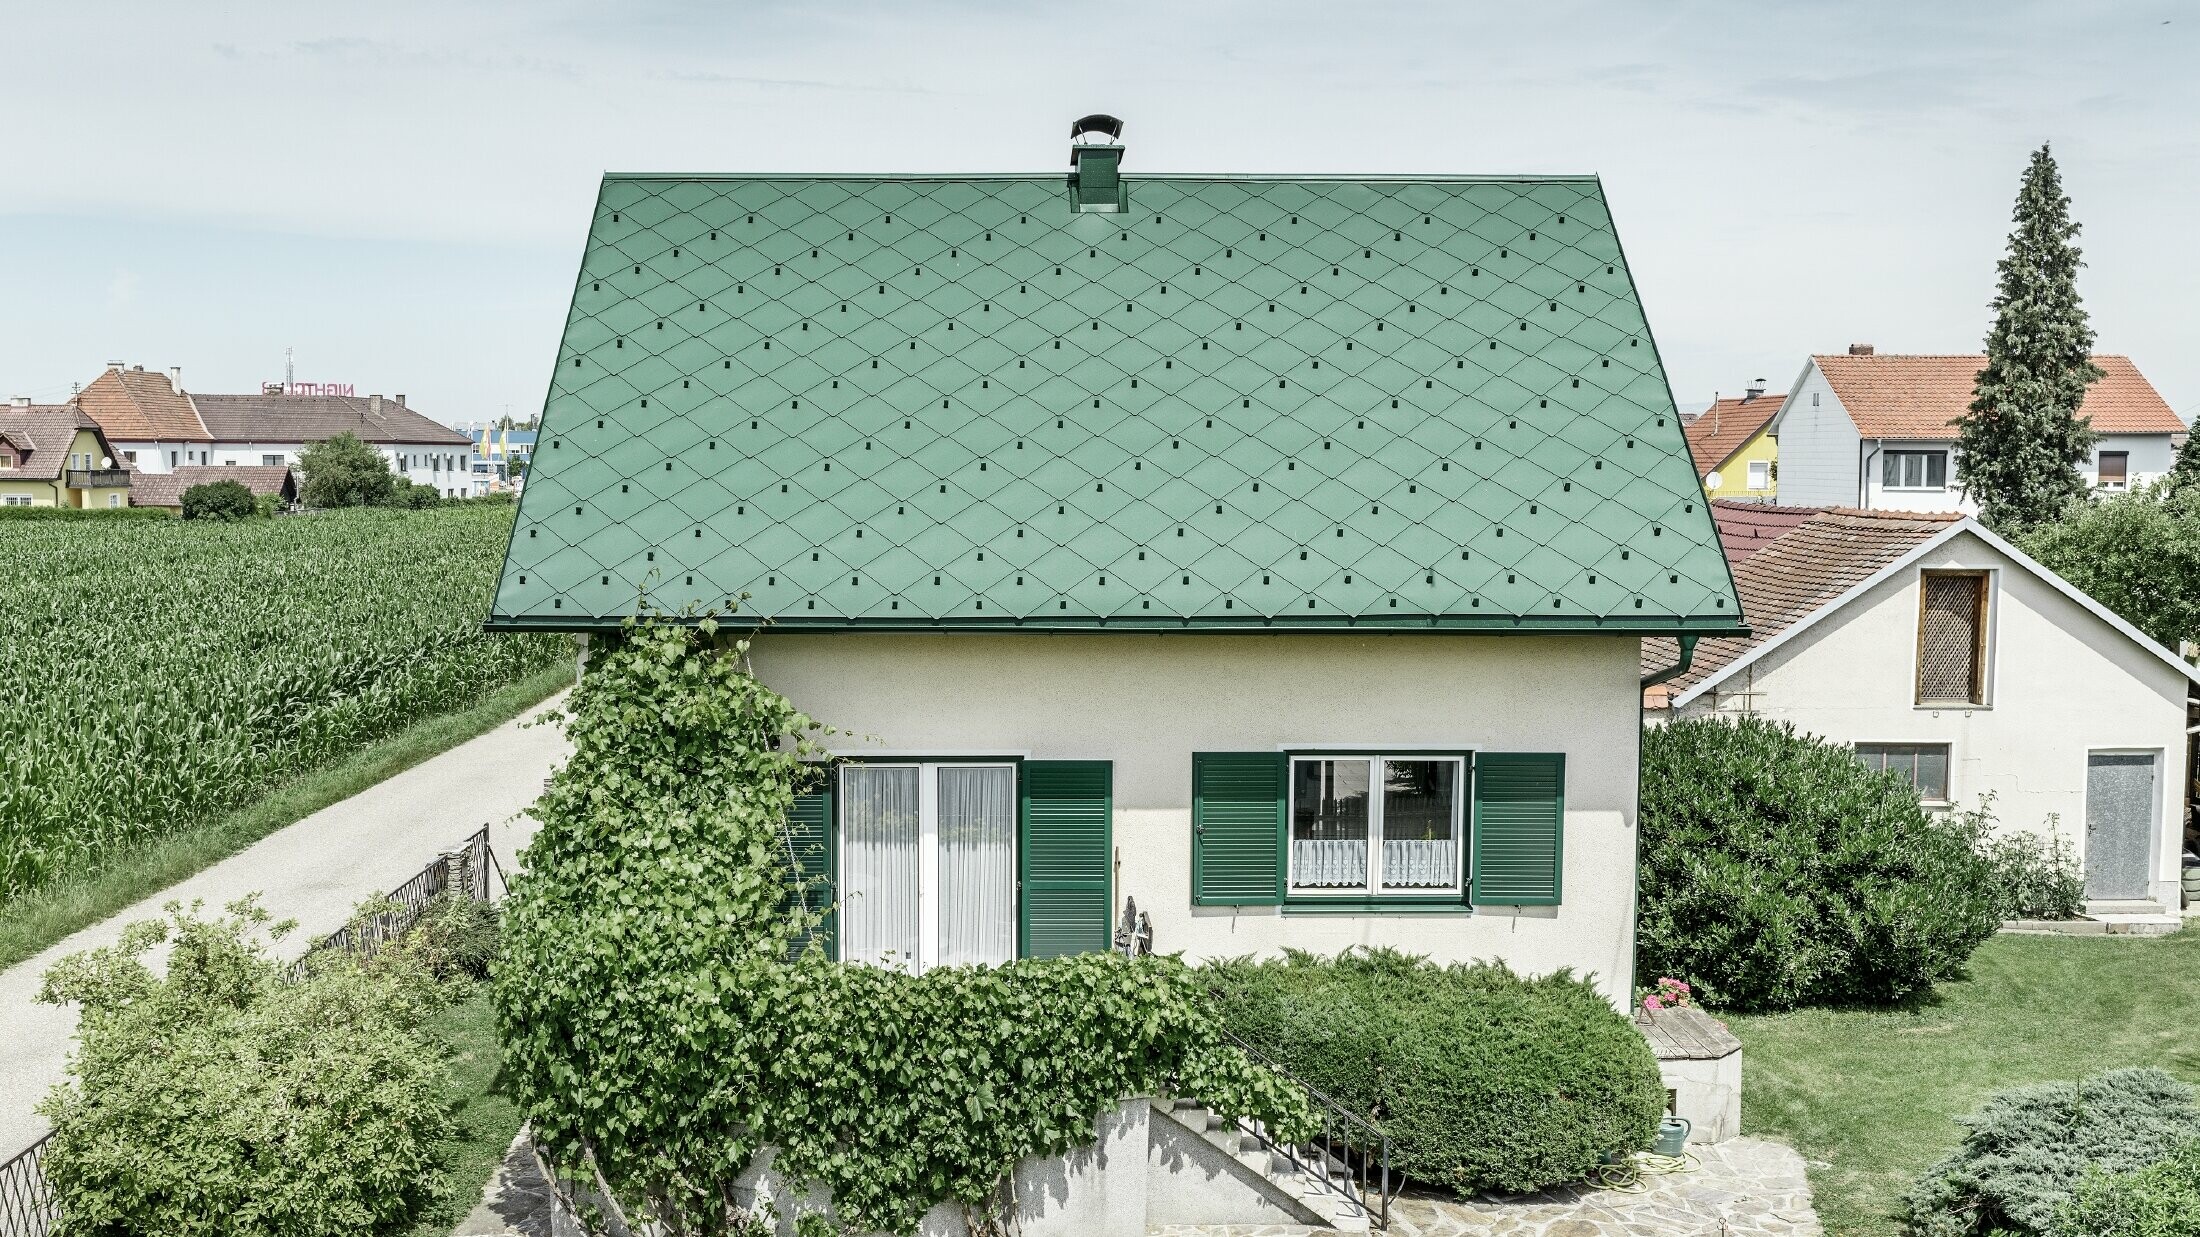 Klasický rodinný dom so sedlovou strechou so strešnou krytinou z hliníka vo farbe machovozelená so zelenými okenicami. Strecha bola pokrytá PREFA strešnými šablónami 44 × 44 vo farbe P.10 machovozelená.